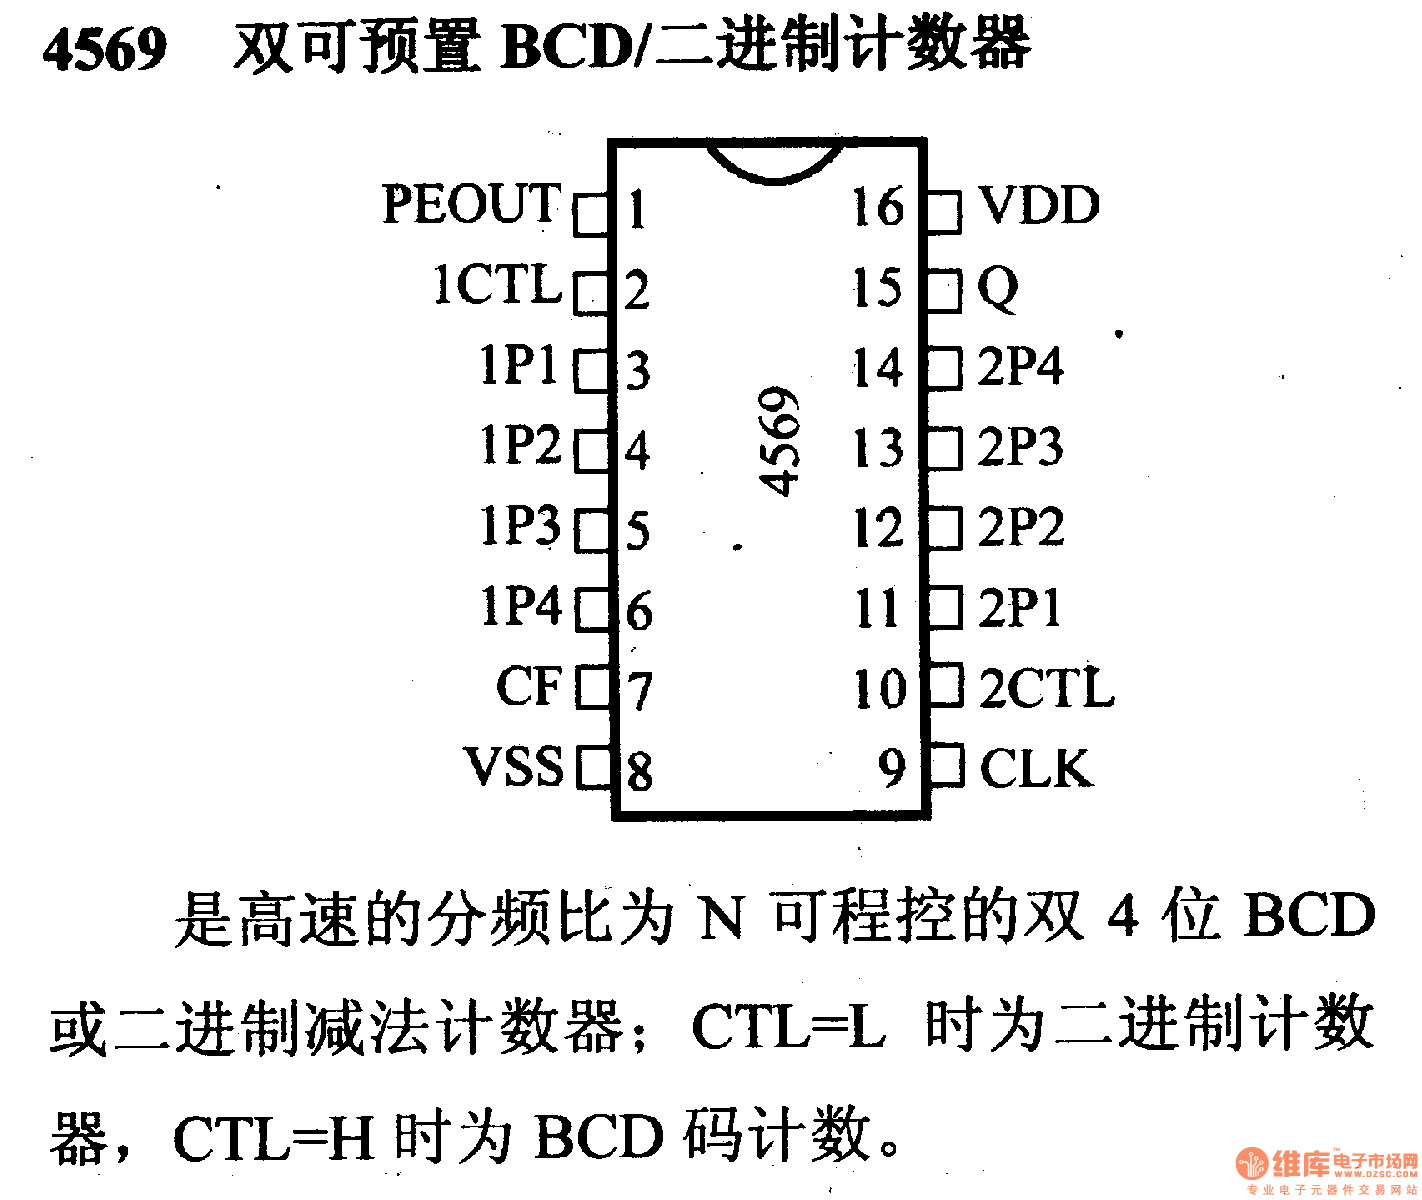 4000系列数字电路,4569双可预置BCD/二进制计数器